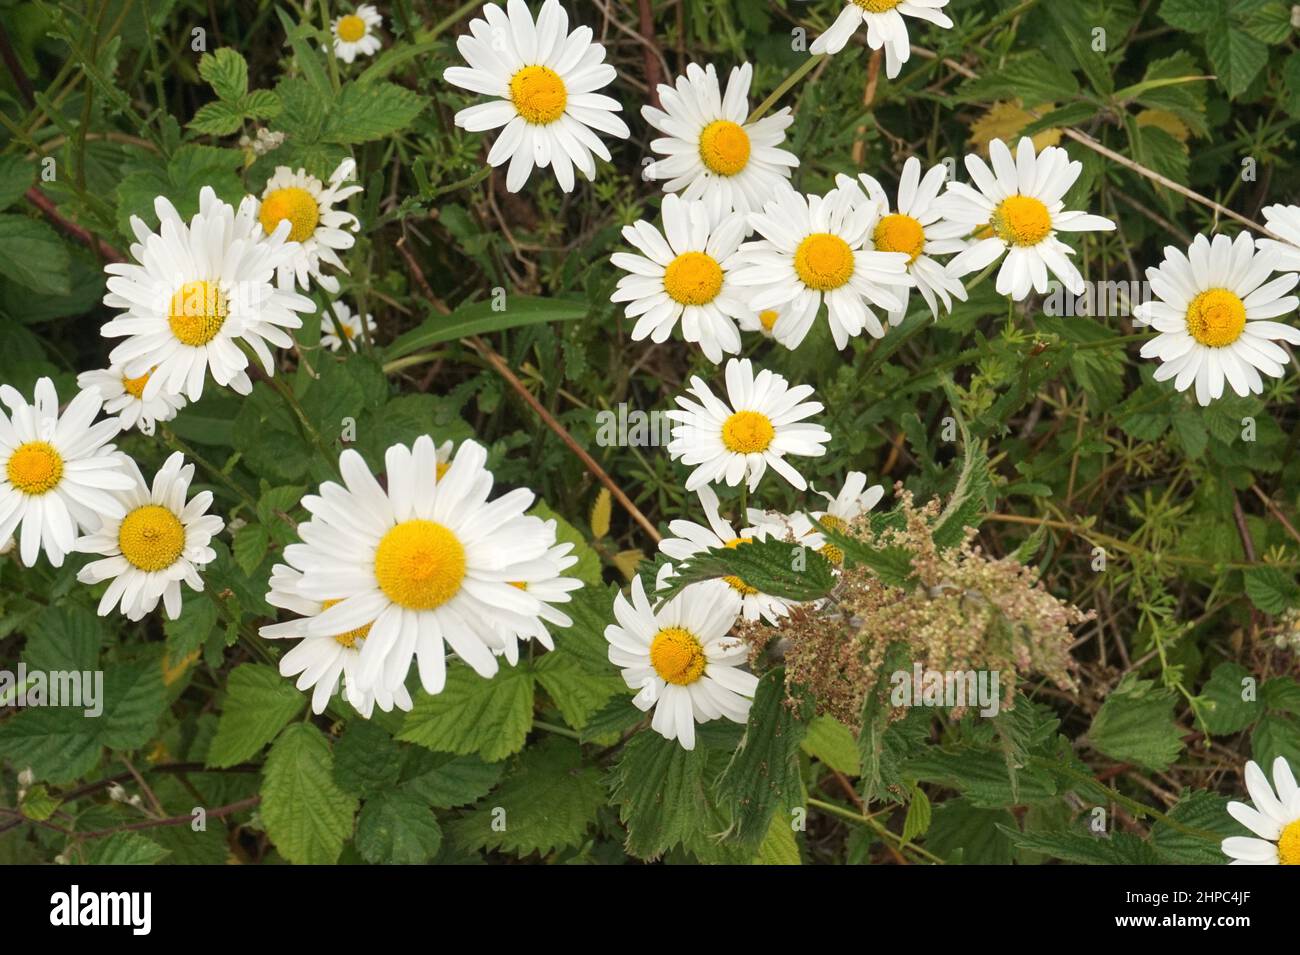 Wild daisies, UK Stock Photo